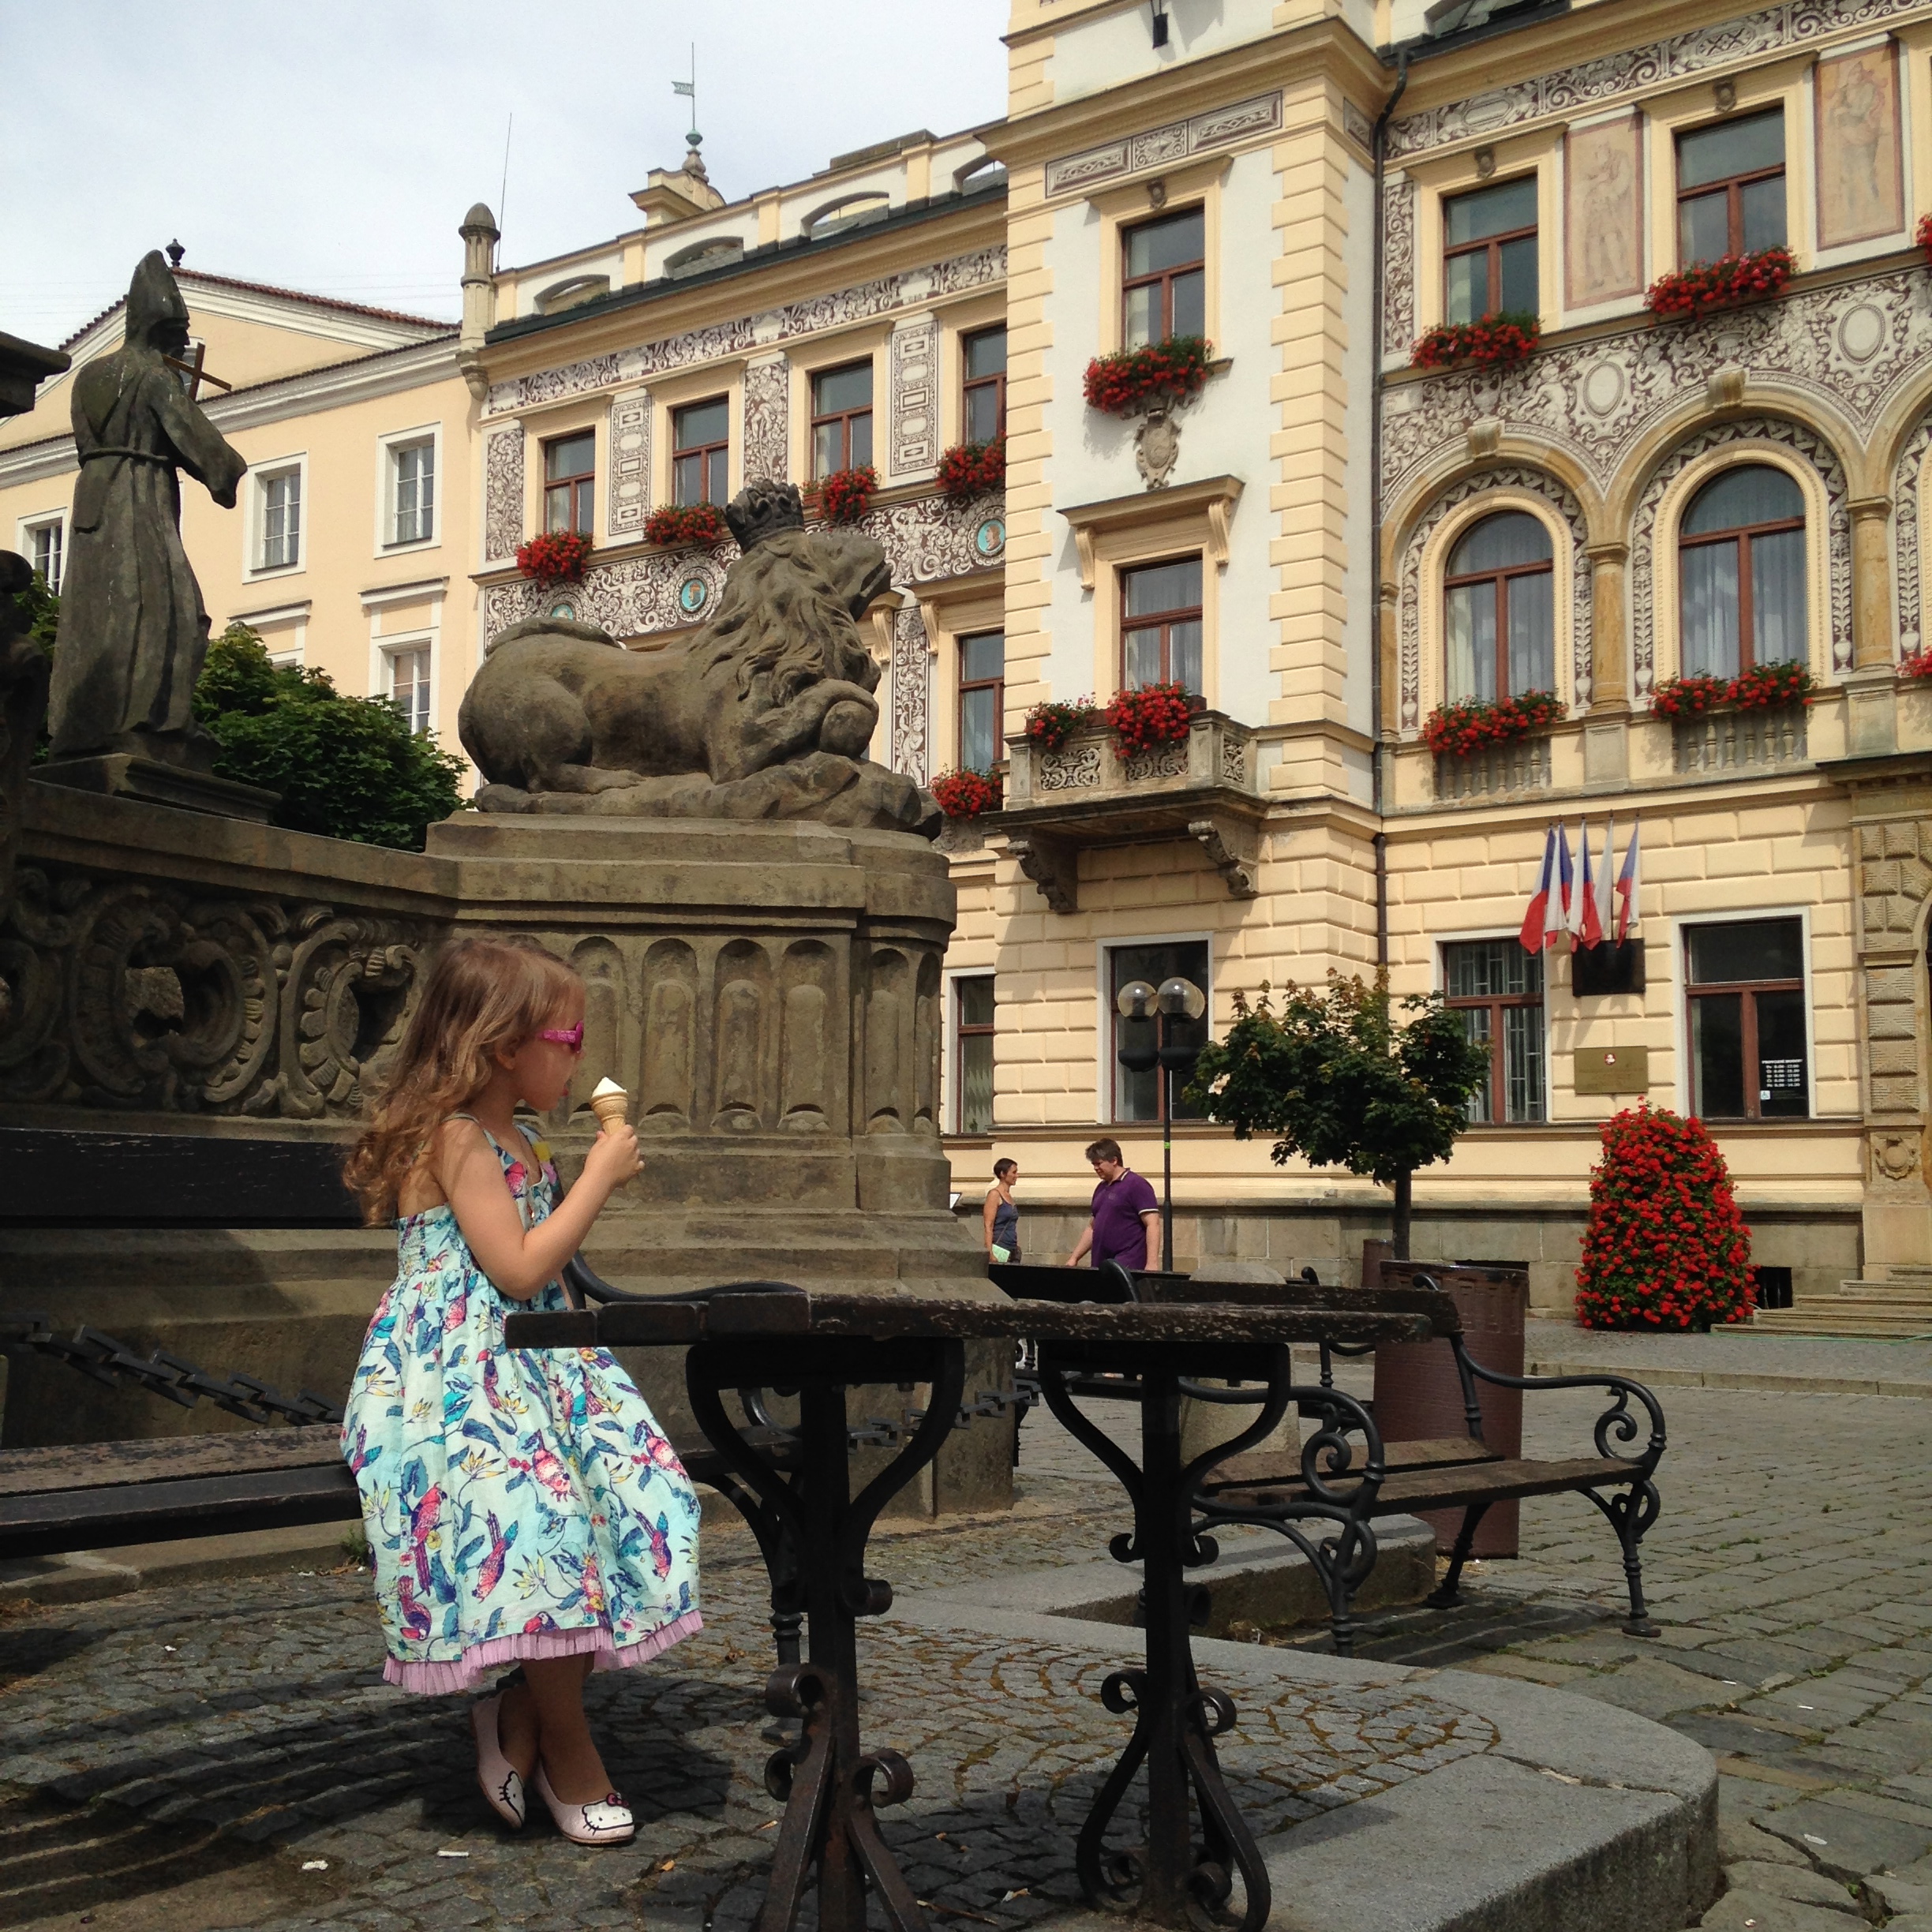 5 reasons for enjoying life in Czech Republic